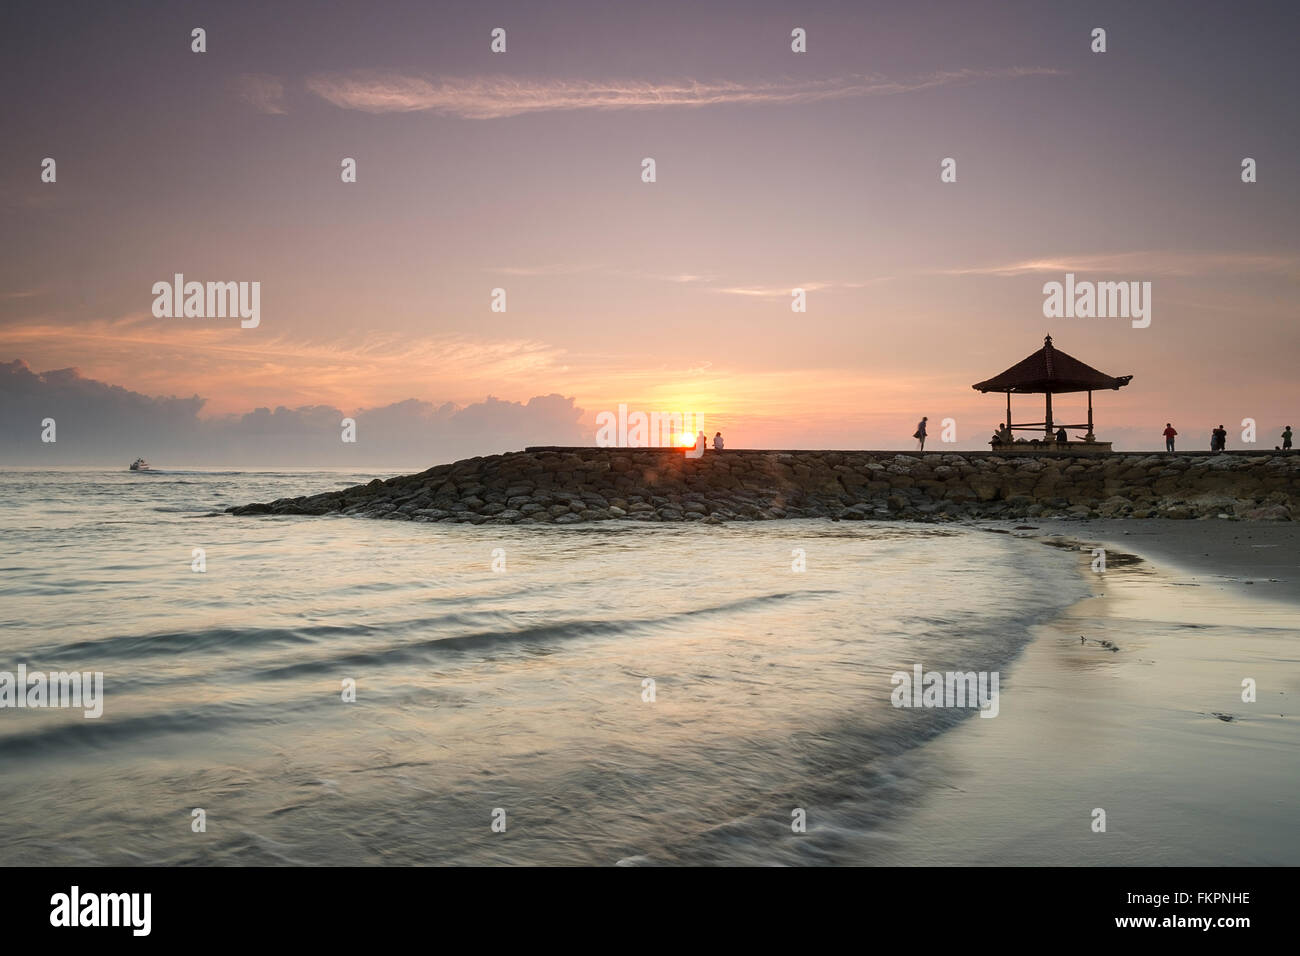 Weiches Bild Sanur Beach bei Sonnenaufgang. Der berühmte Tourismus Ort für Urlaub und genießen Sie ihren Urlaub in Bali, Indonesien. Stockfoto